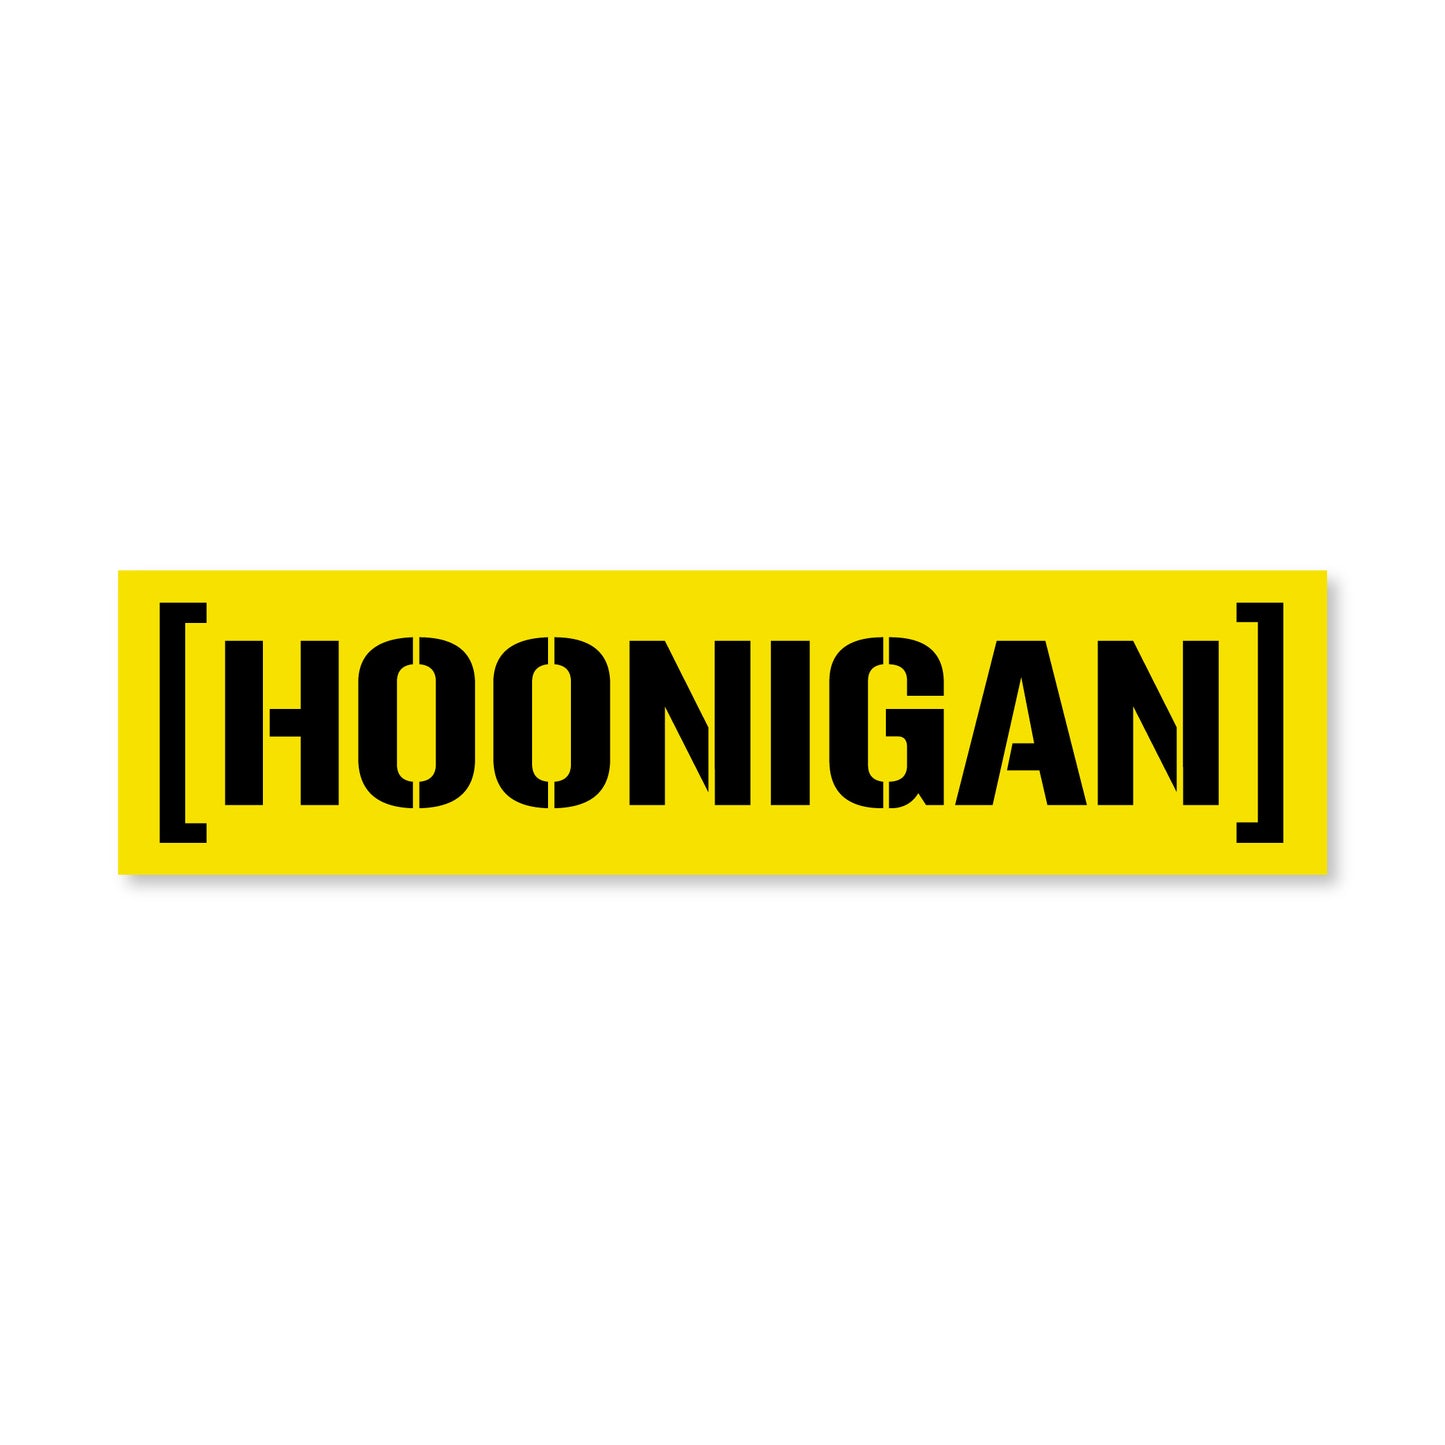 Hoonigan CENSOR BAR Sticker (8")